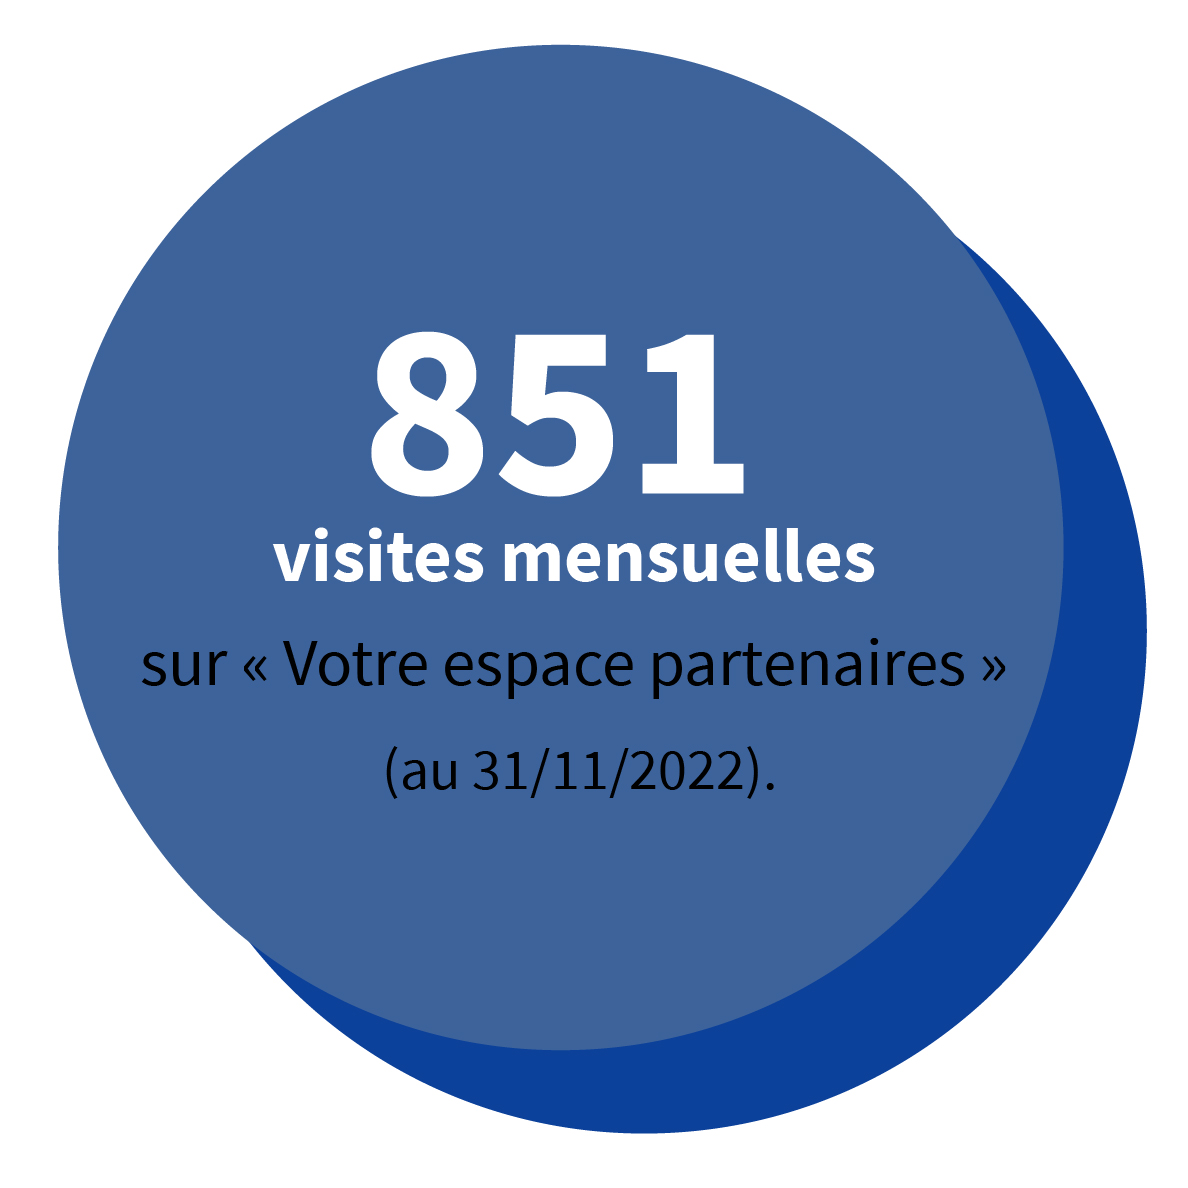 851 visites mensuelles sur « Votre espace partenaires » (au 31/11/2022).